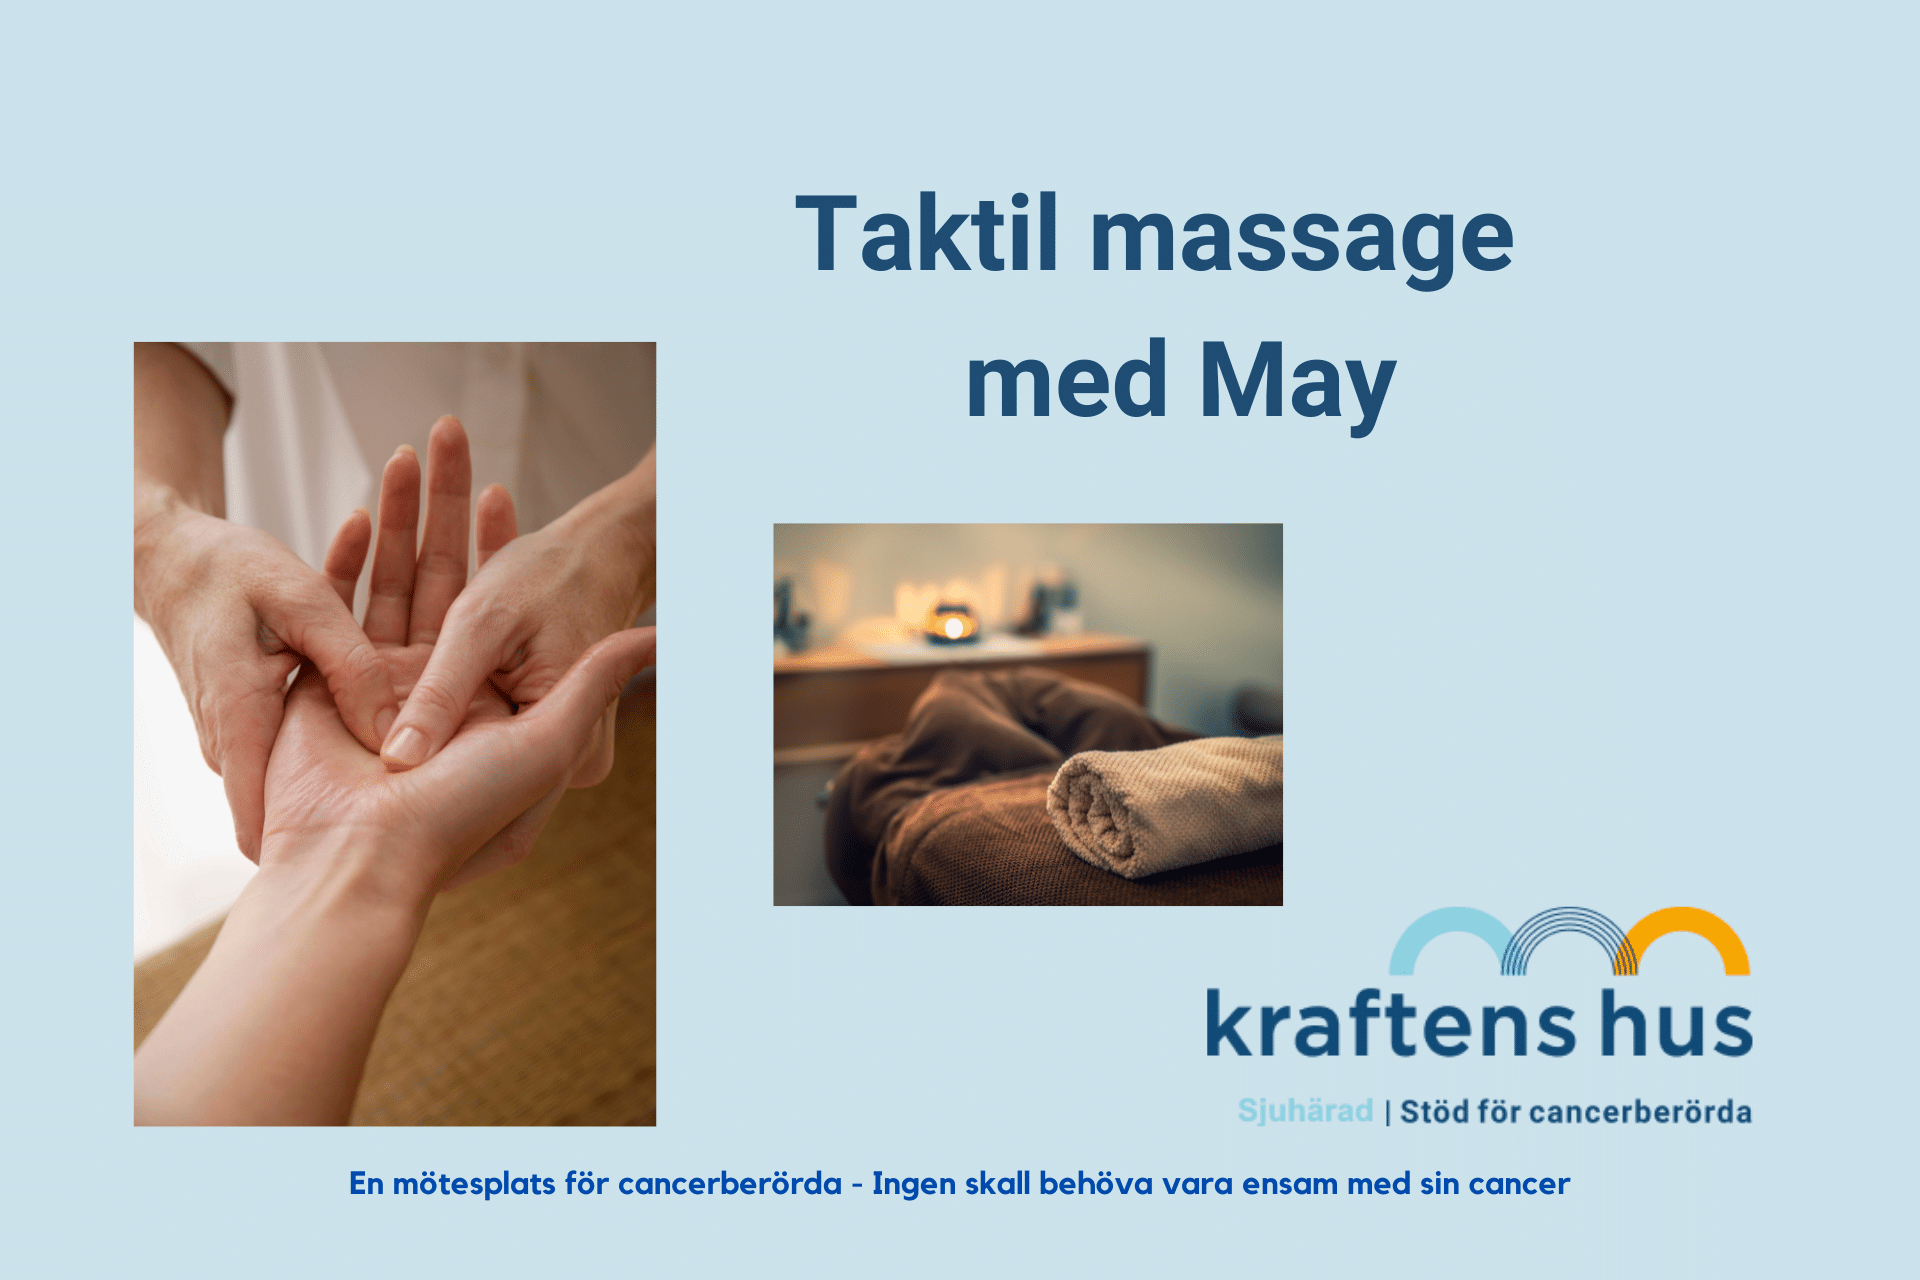 Taktil massage med May på Kraftens hus. En mjuk, omslutande beröring av huden på hand, fot eller rygg.